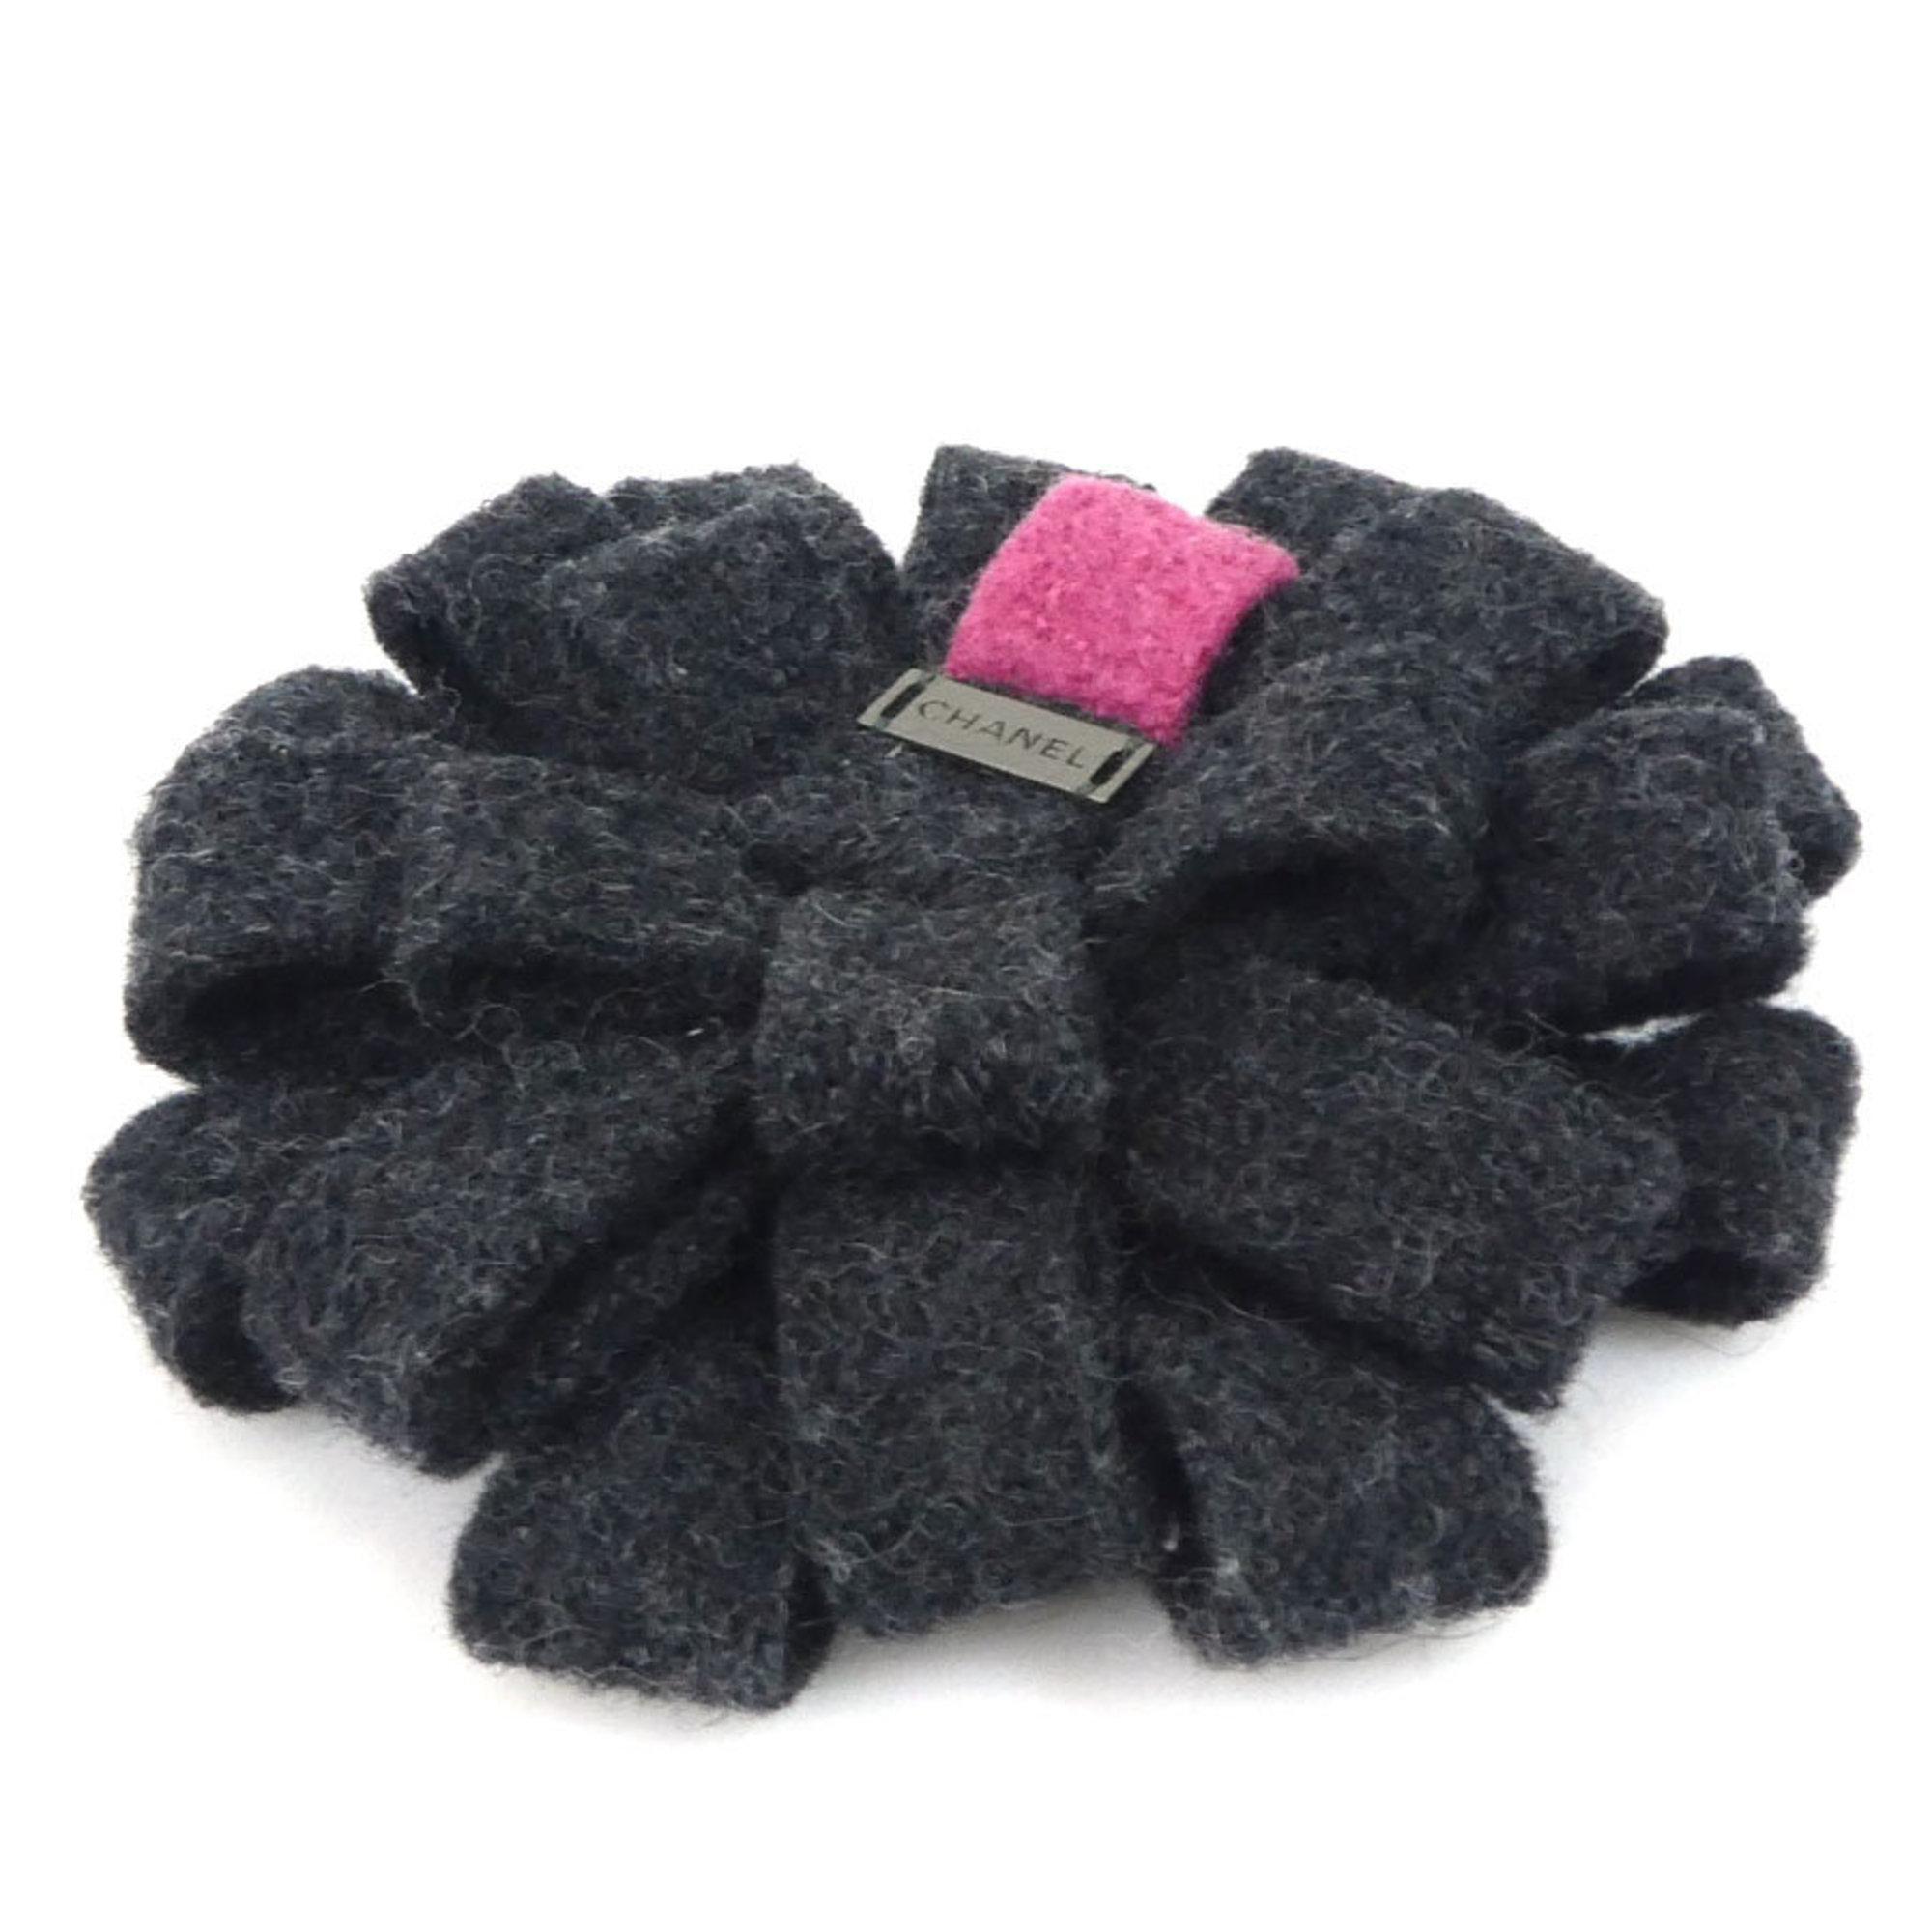 Chanel CHANEL brooch corsage flower motif tweed dark gray / magenta ladies e56070a